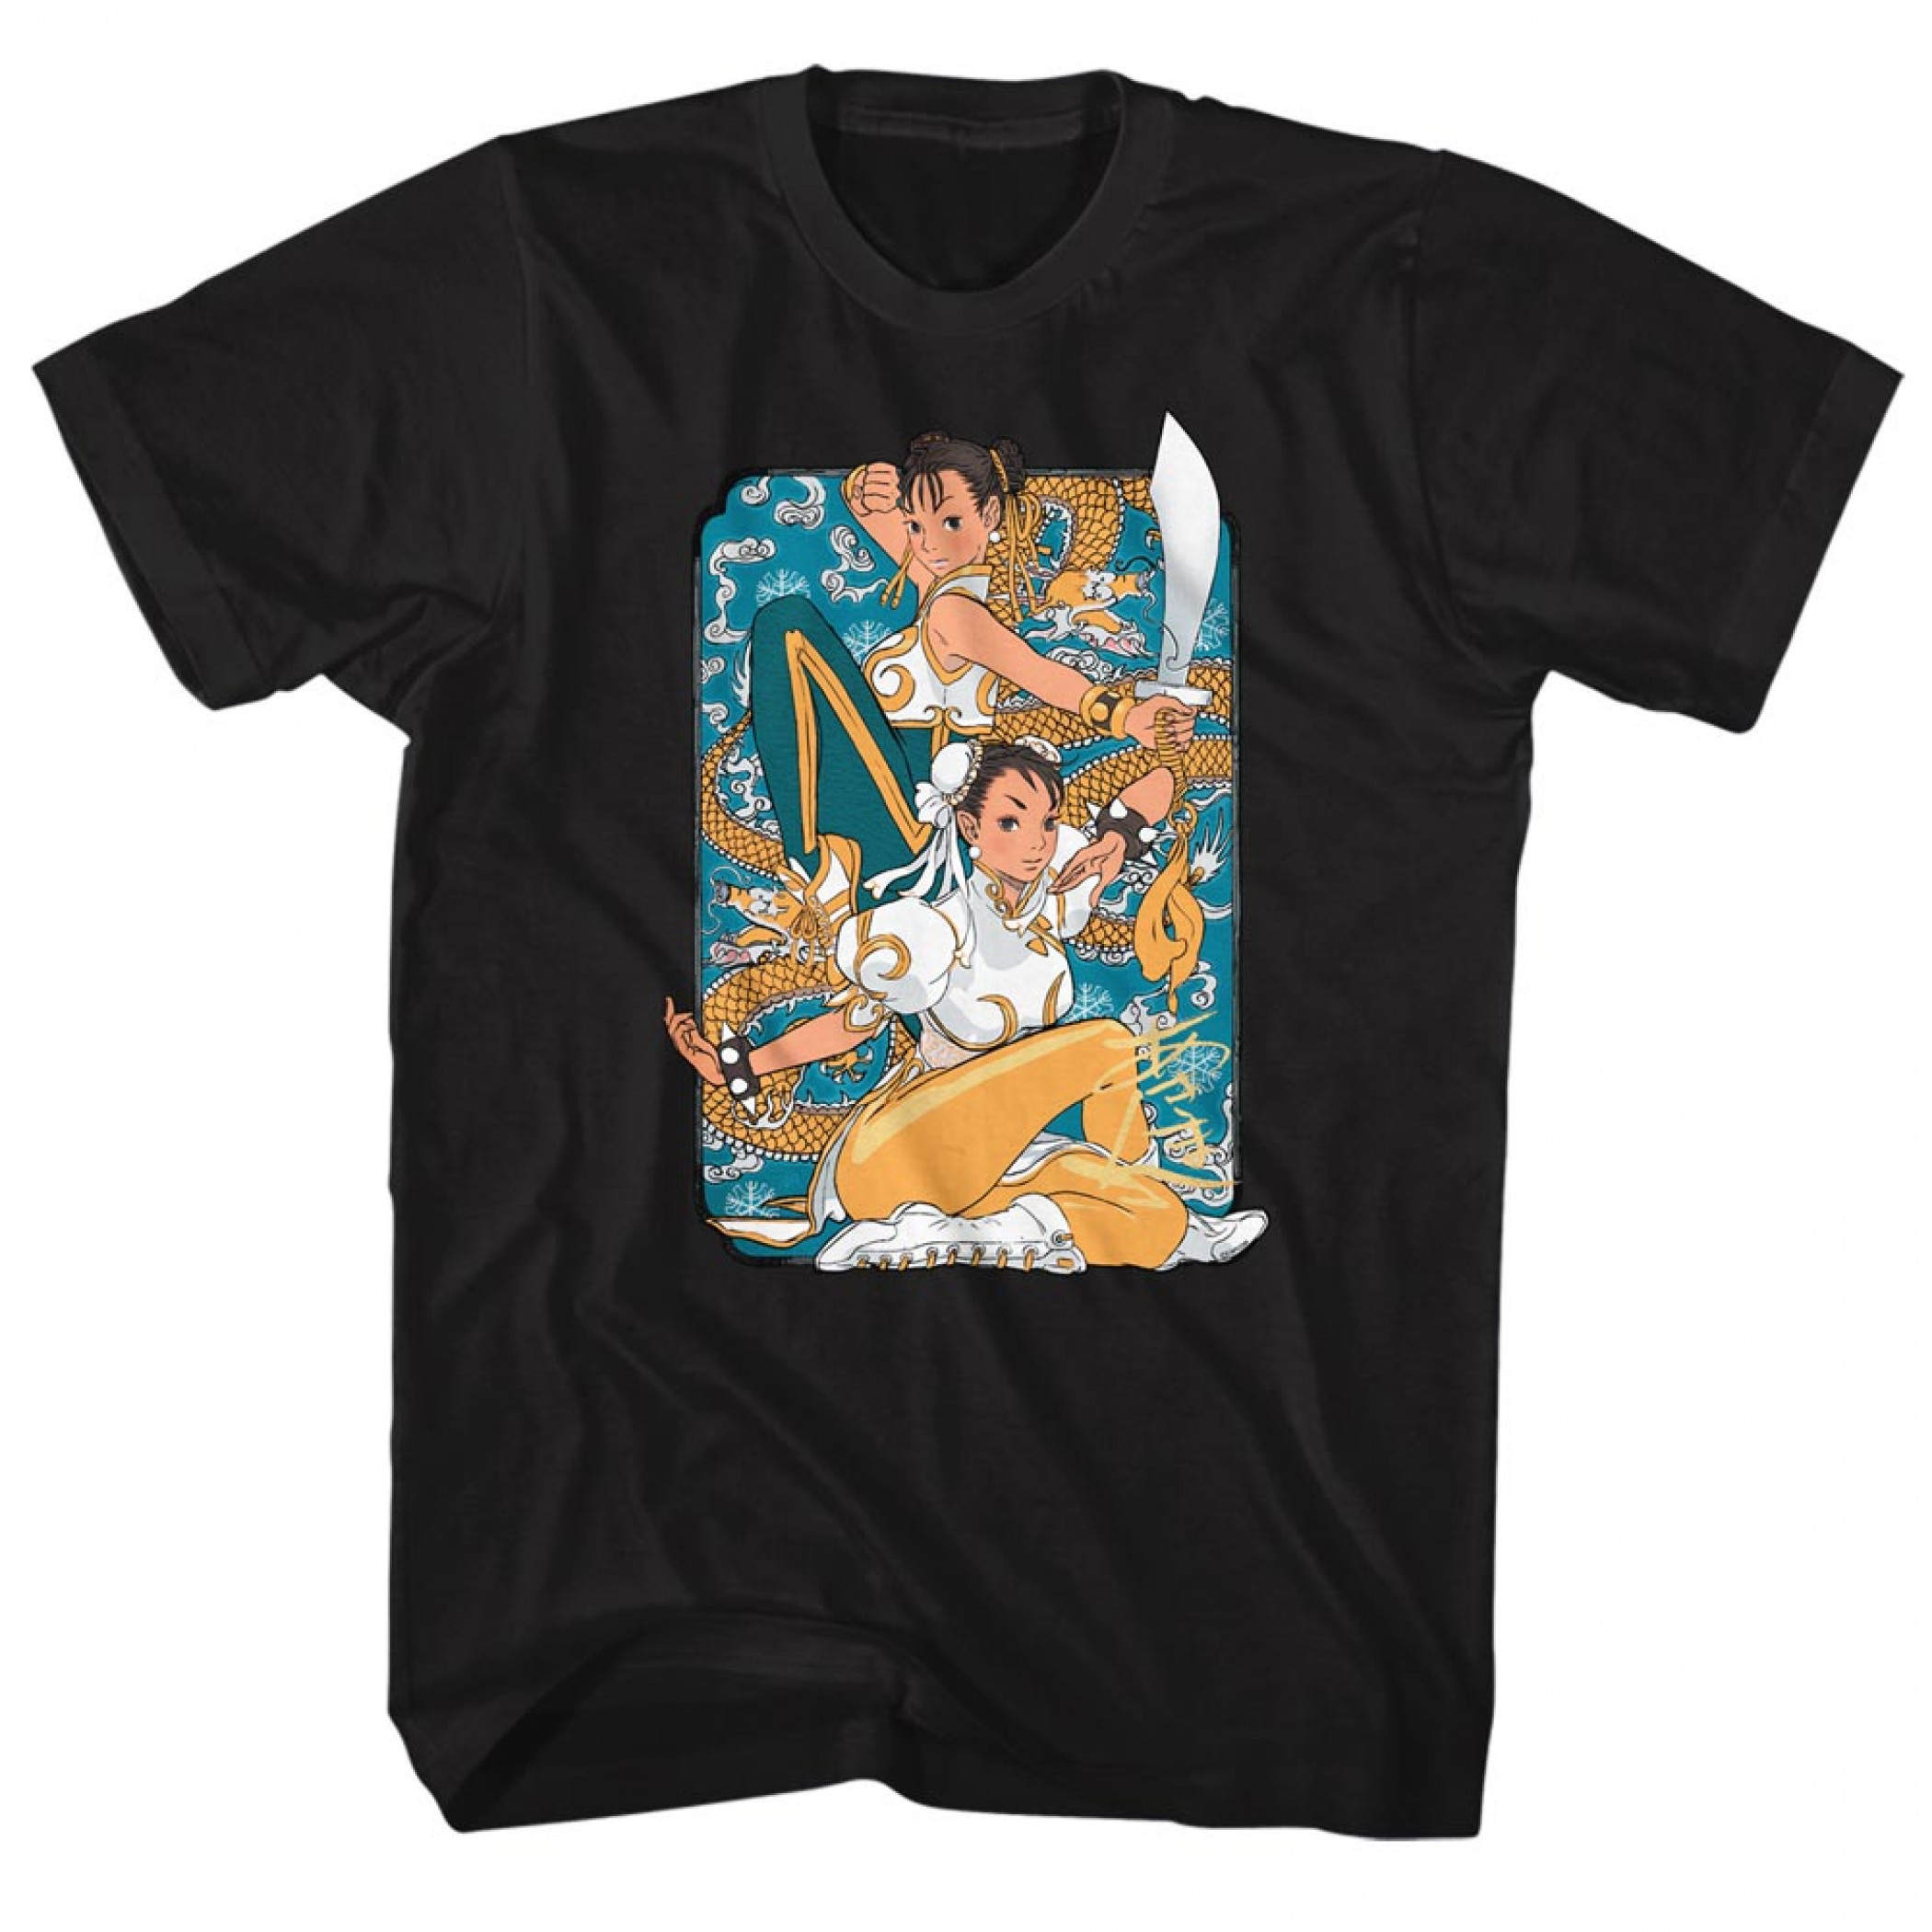 Street Fighter Chun-Li T-Shirt